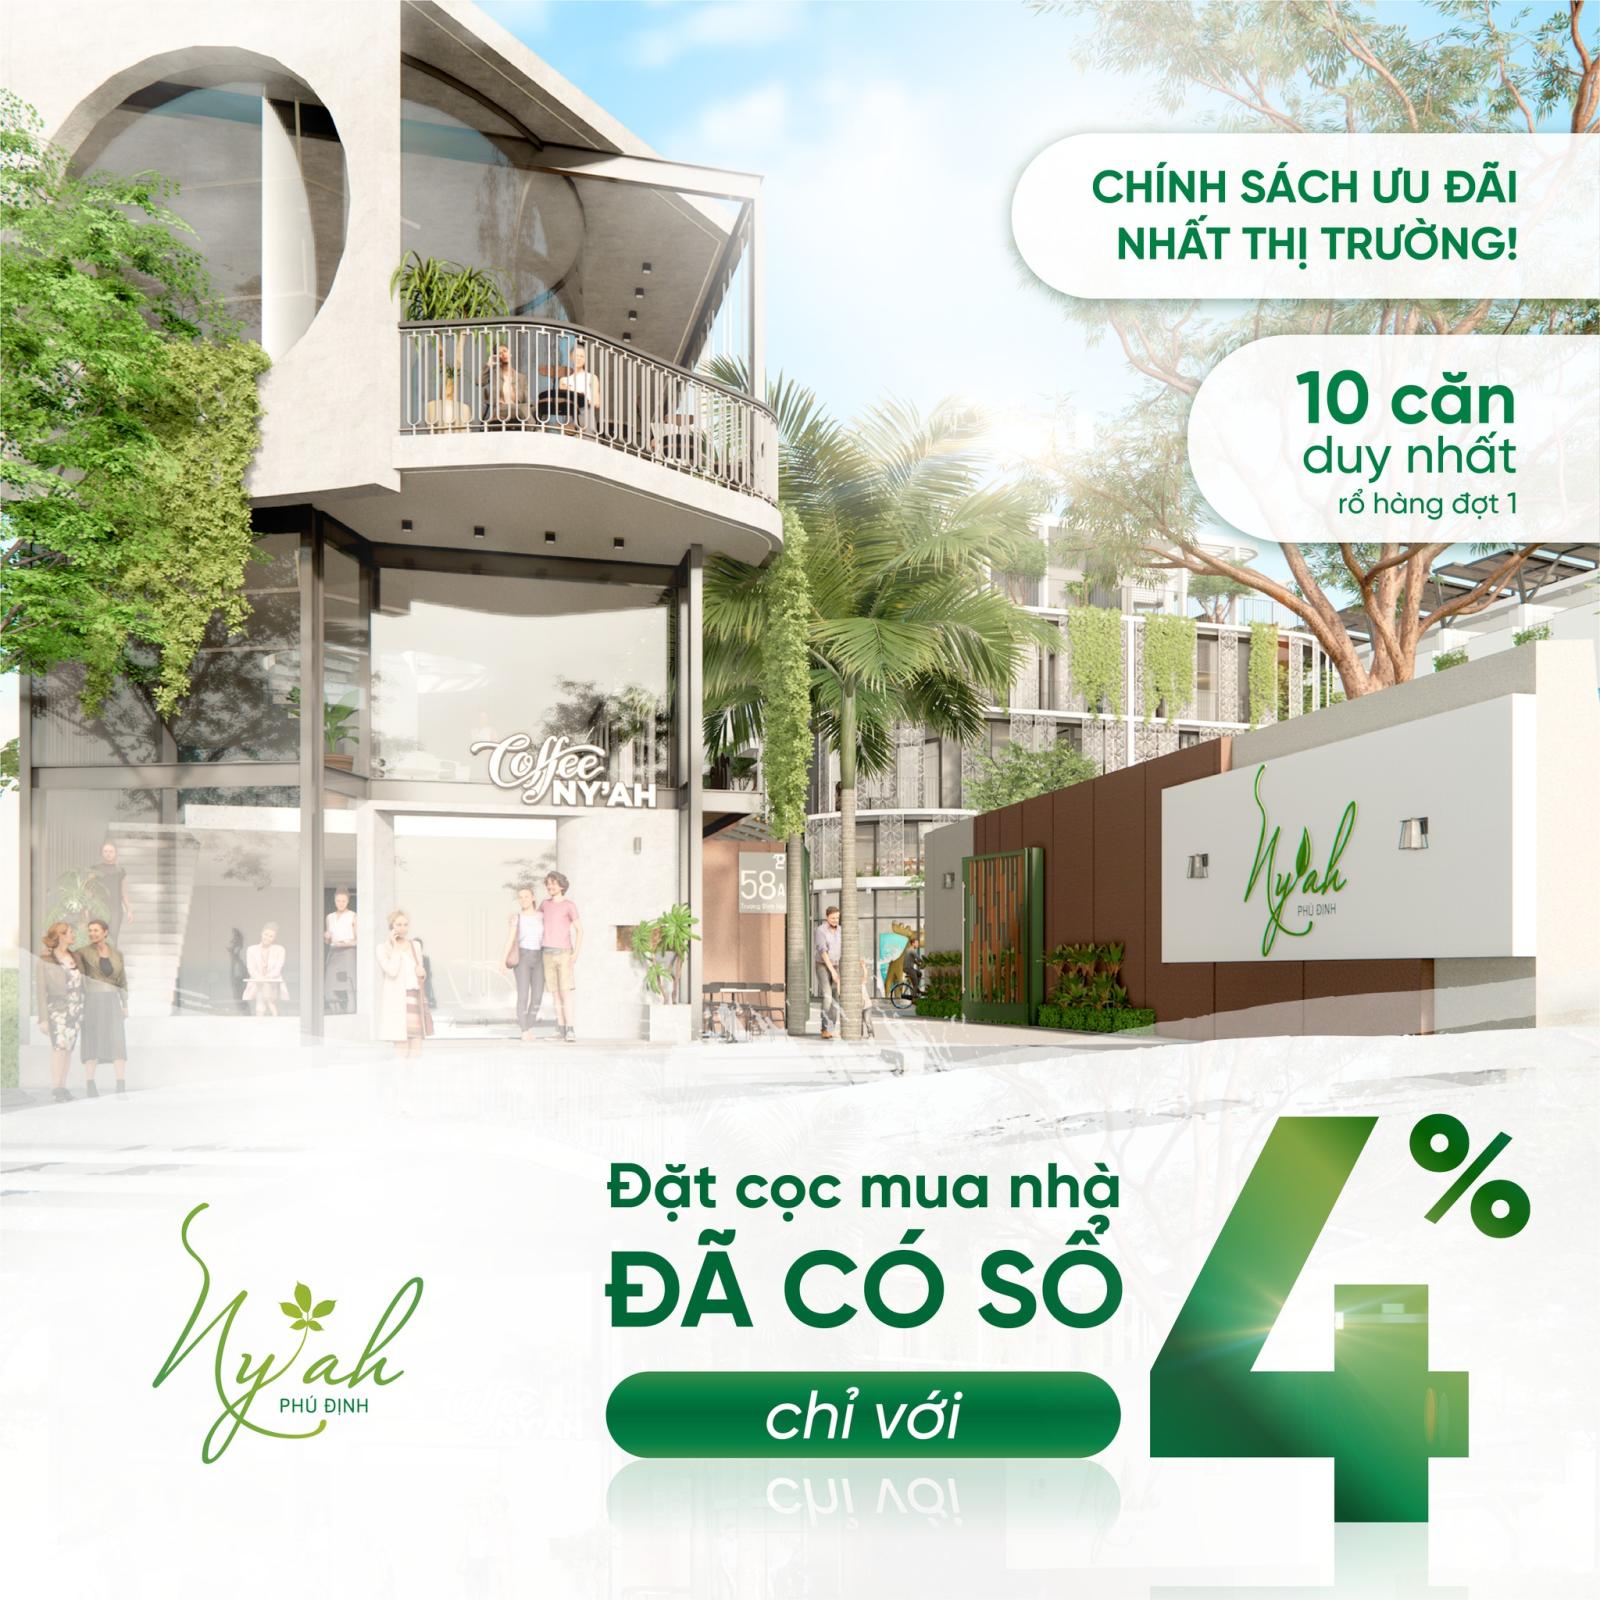 Bán nhà phố Ny'Ah Phú Định Q.8, khu compound giá chỉ từ 6,8 tỉỉ